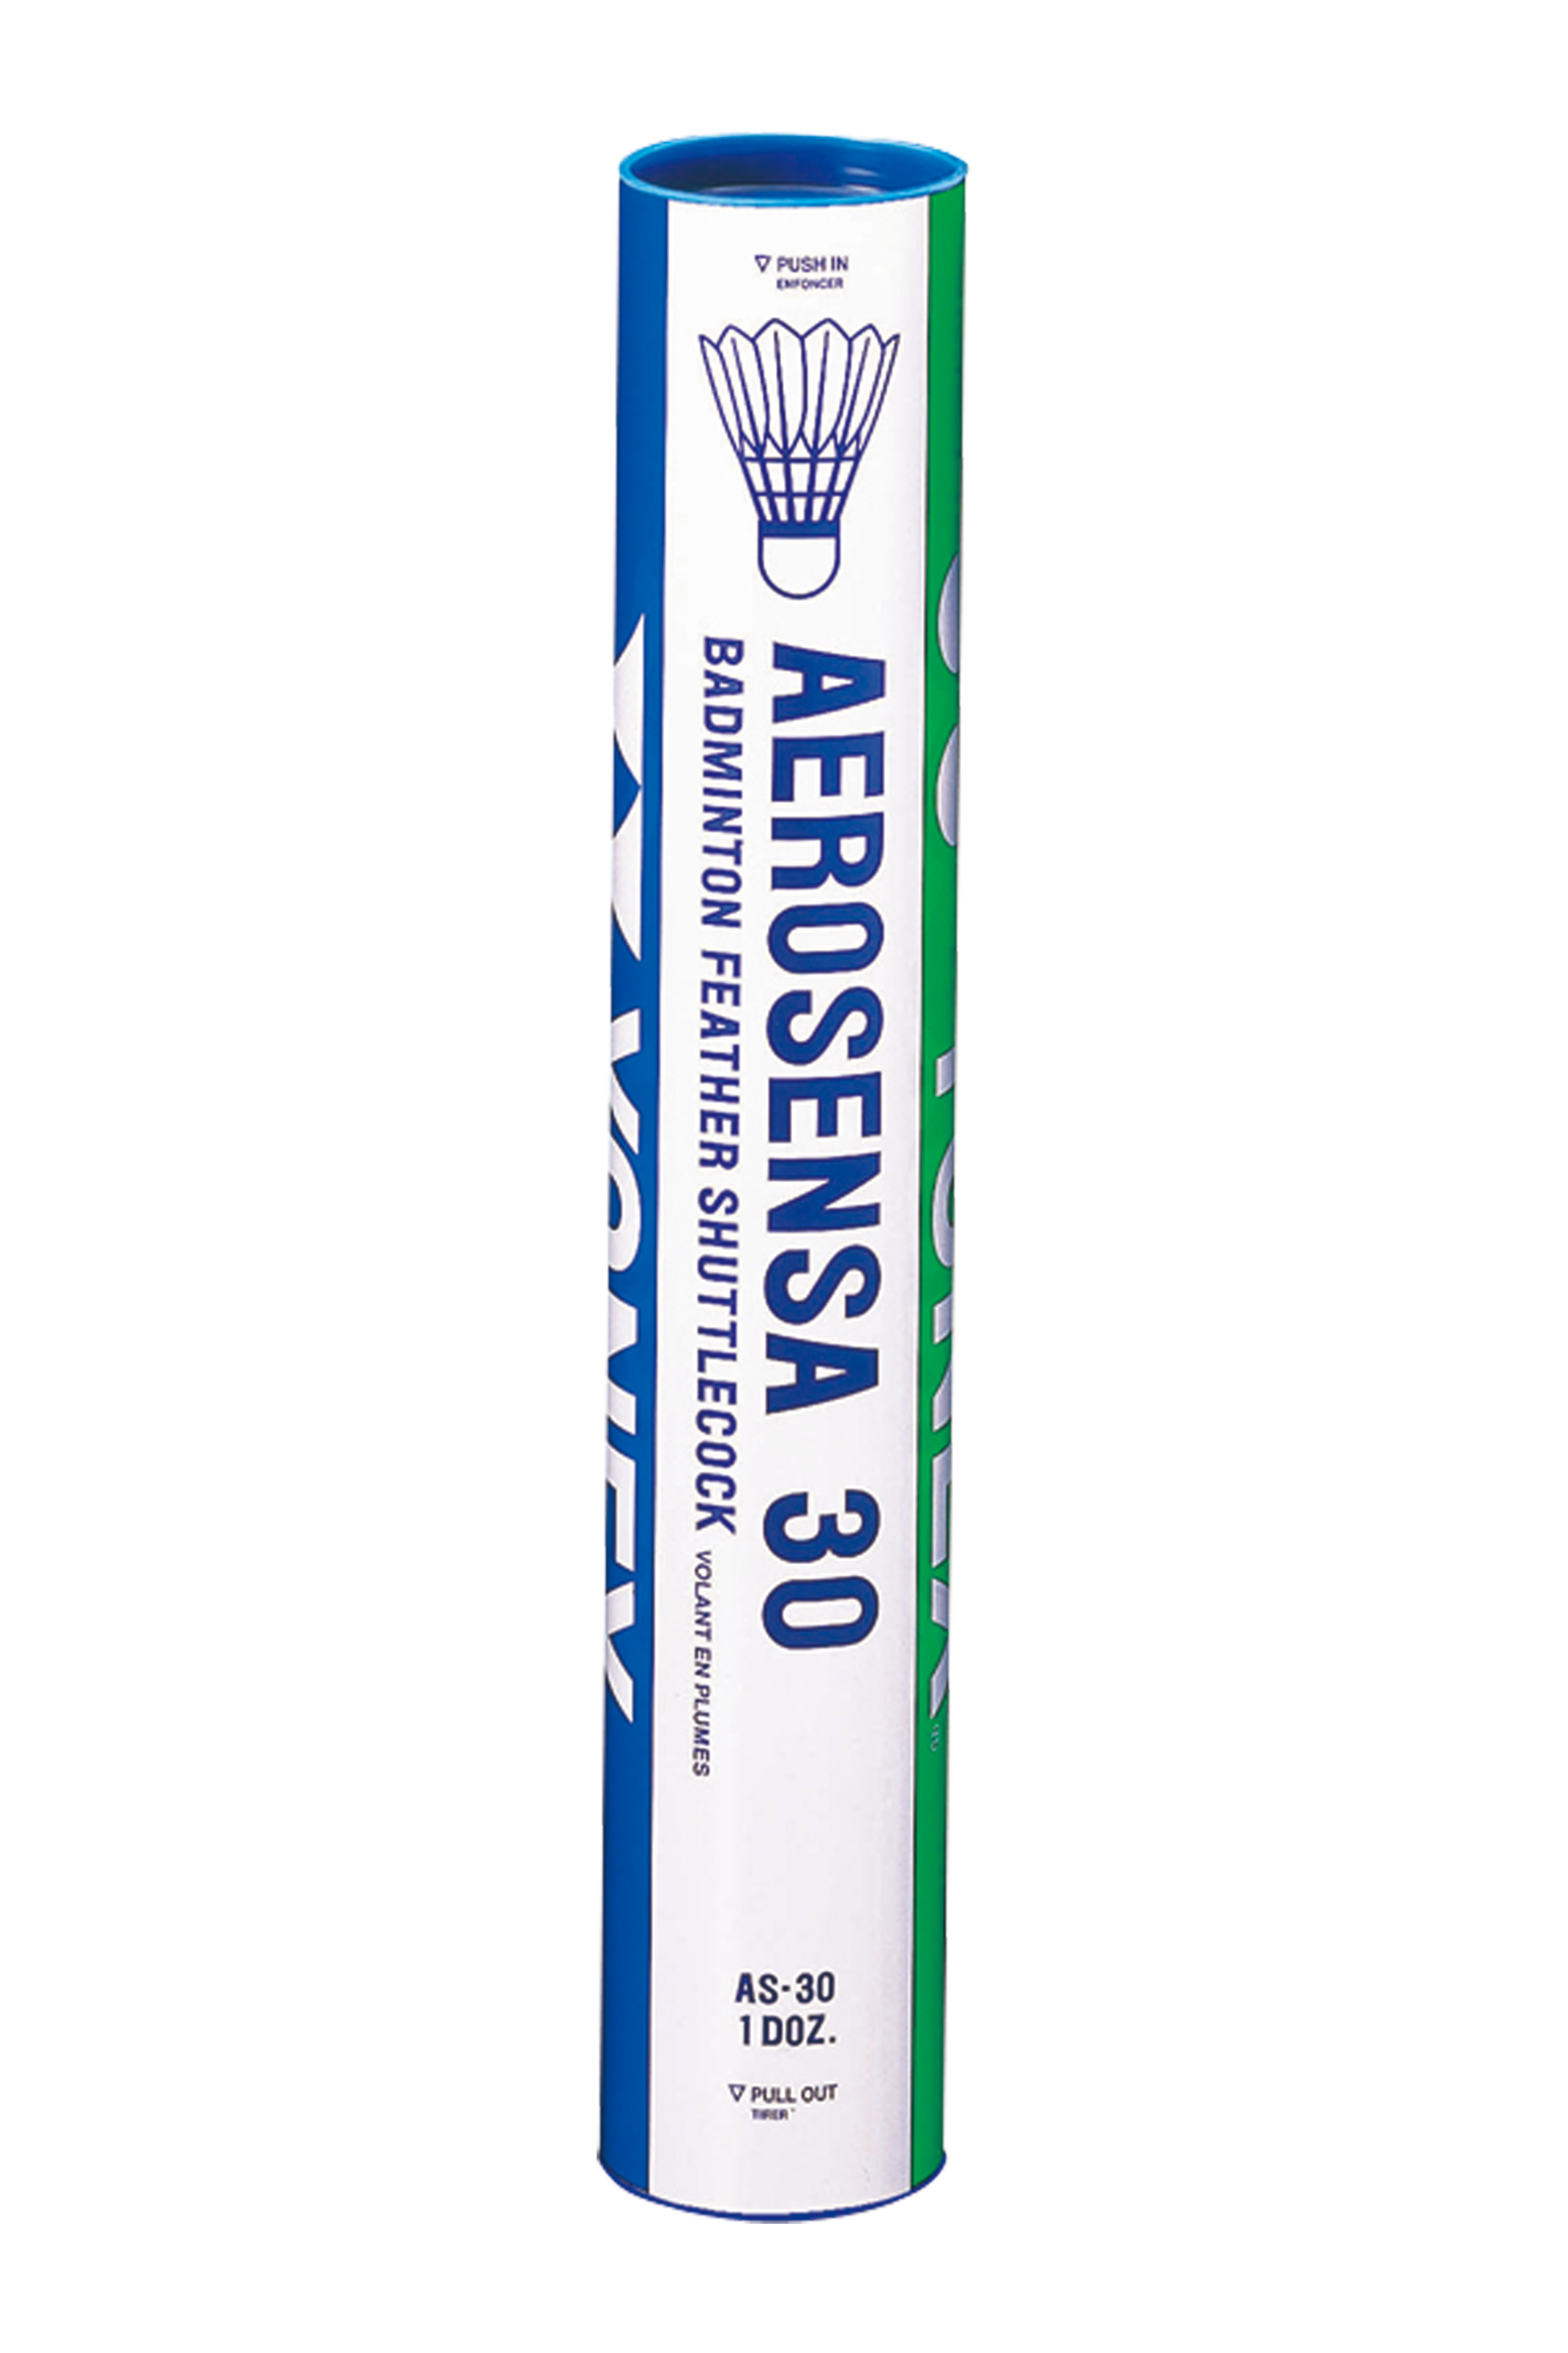 Yonex Aerosensa 30 (AS30) Premium Tournament Feather Badminton Shuttlecocks